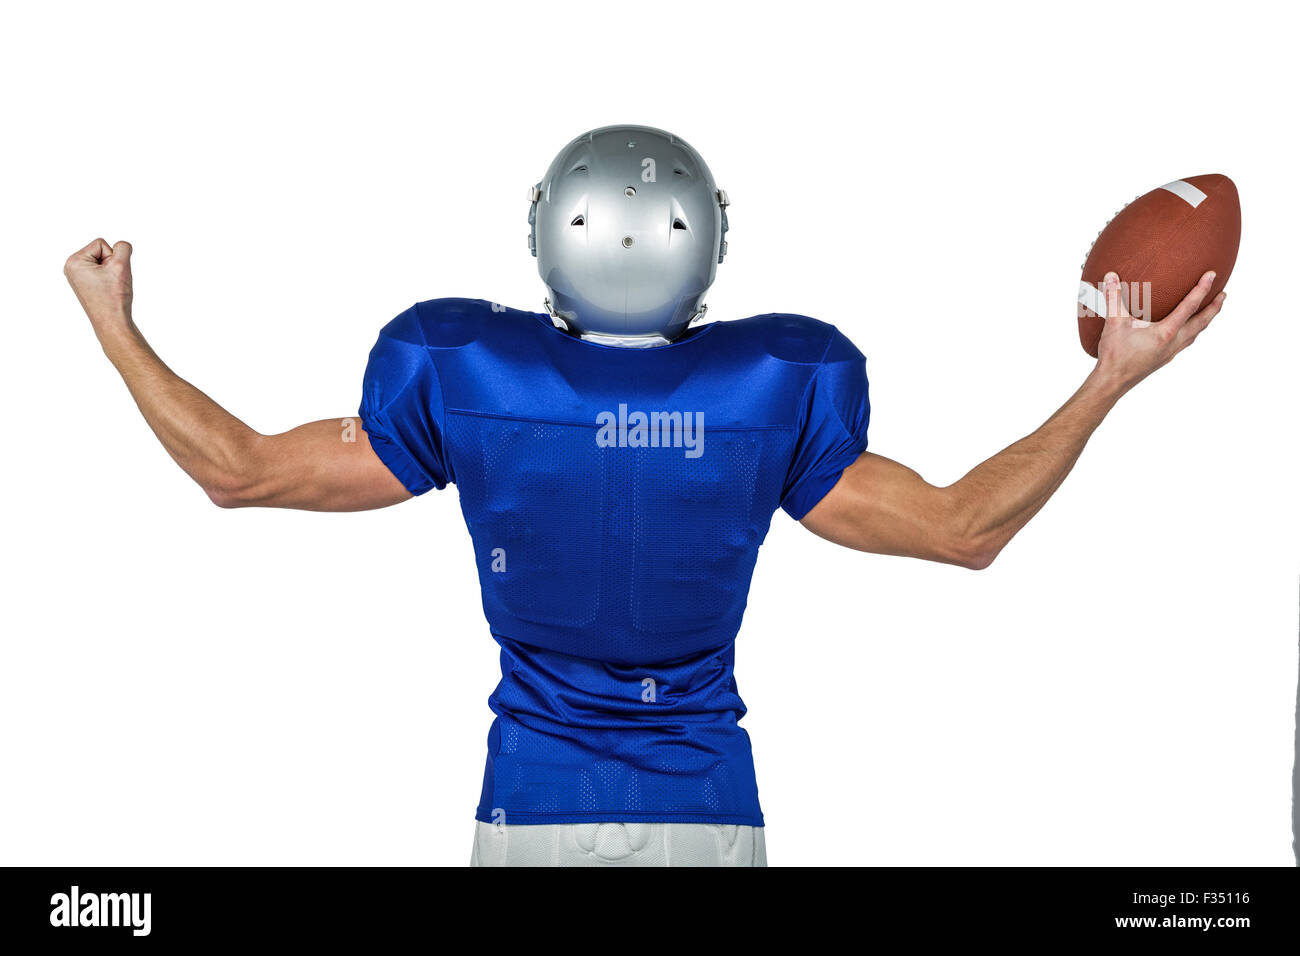 US-amerikanischer Footballspieler beugen Muskeln gedrückter Kugel Stockfoto